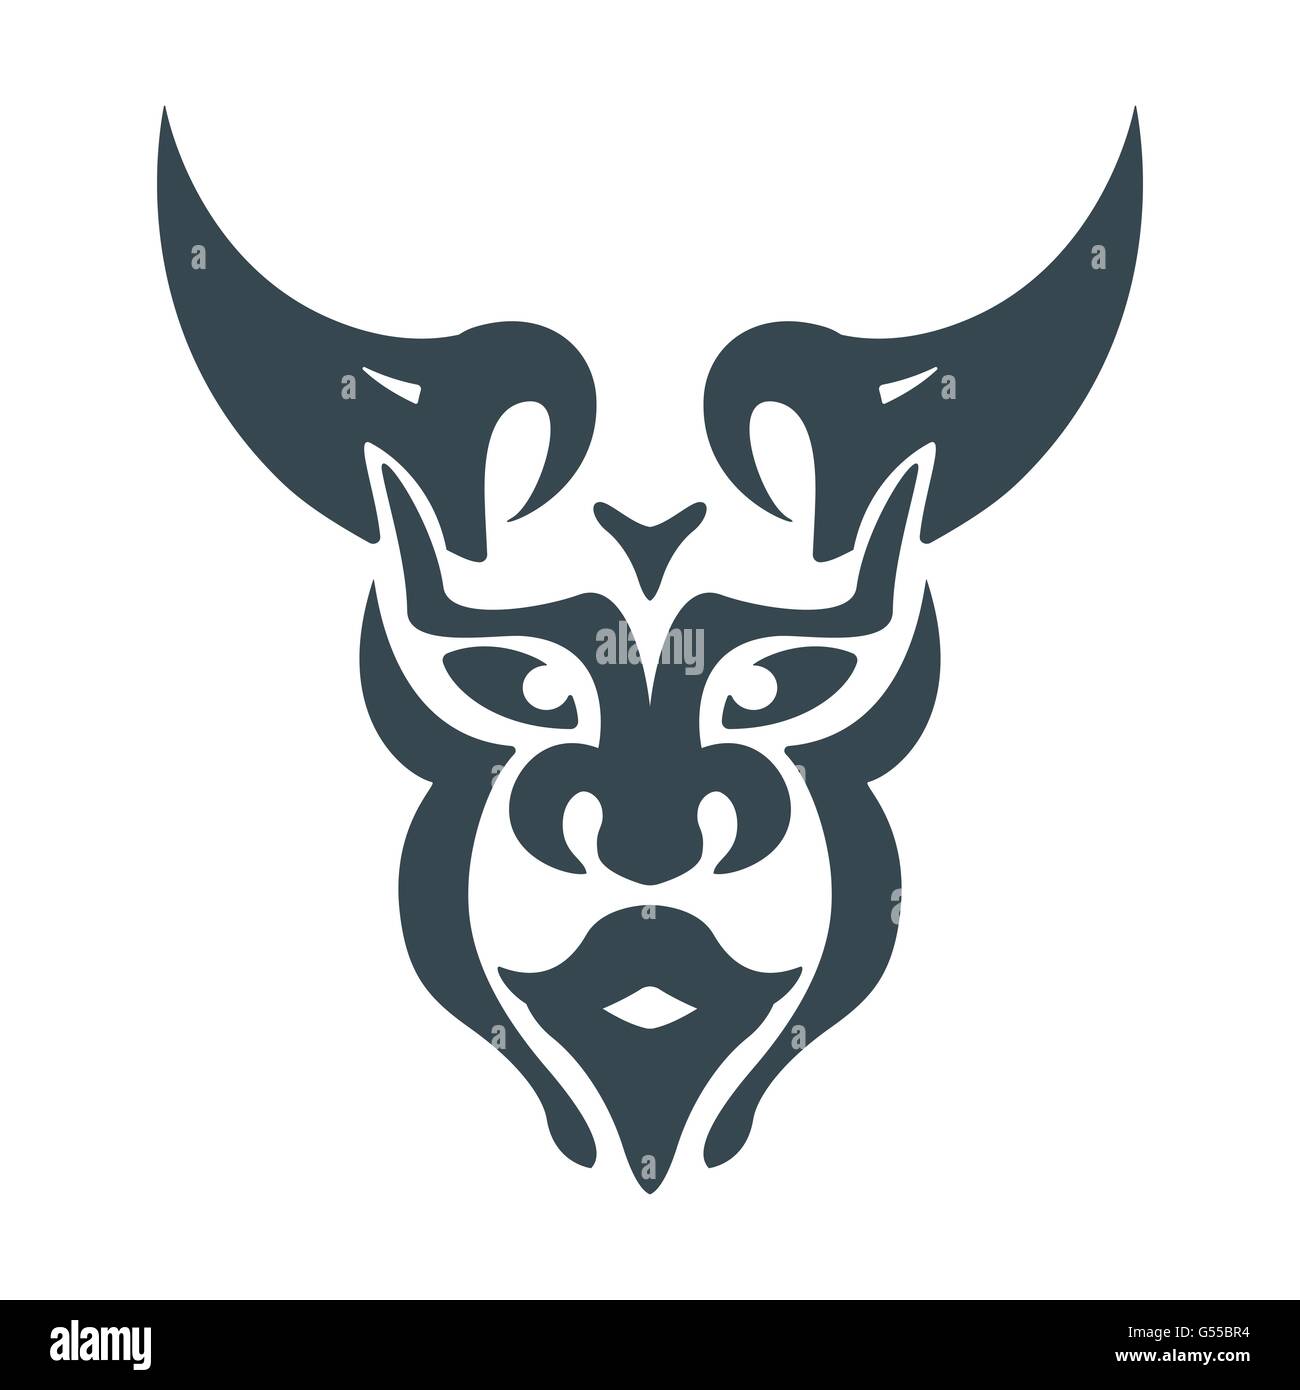 Résumé L'homme bull head chaman viking vecteur conception symbole mystique Illustration de Vecteur